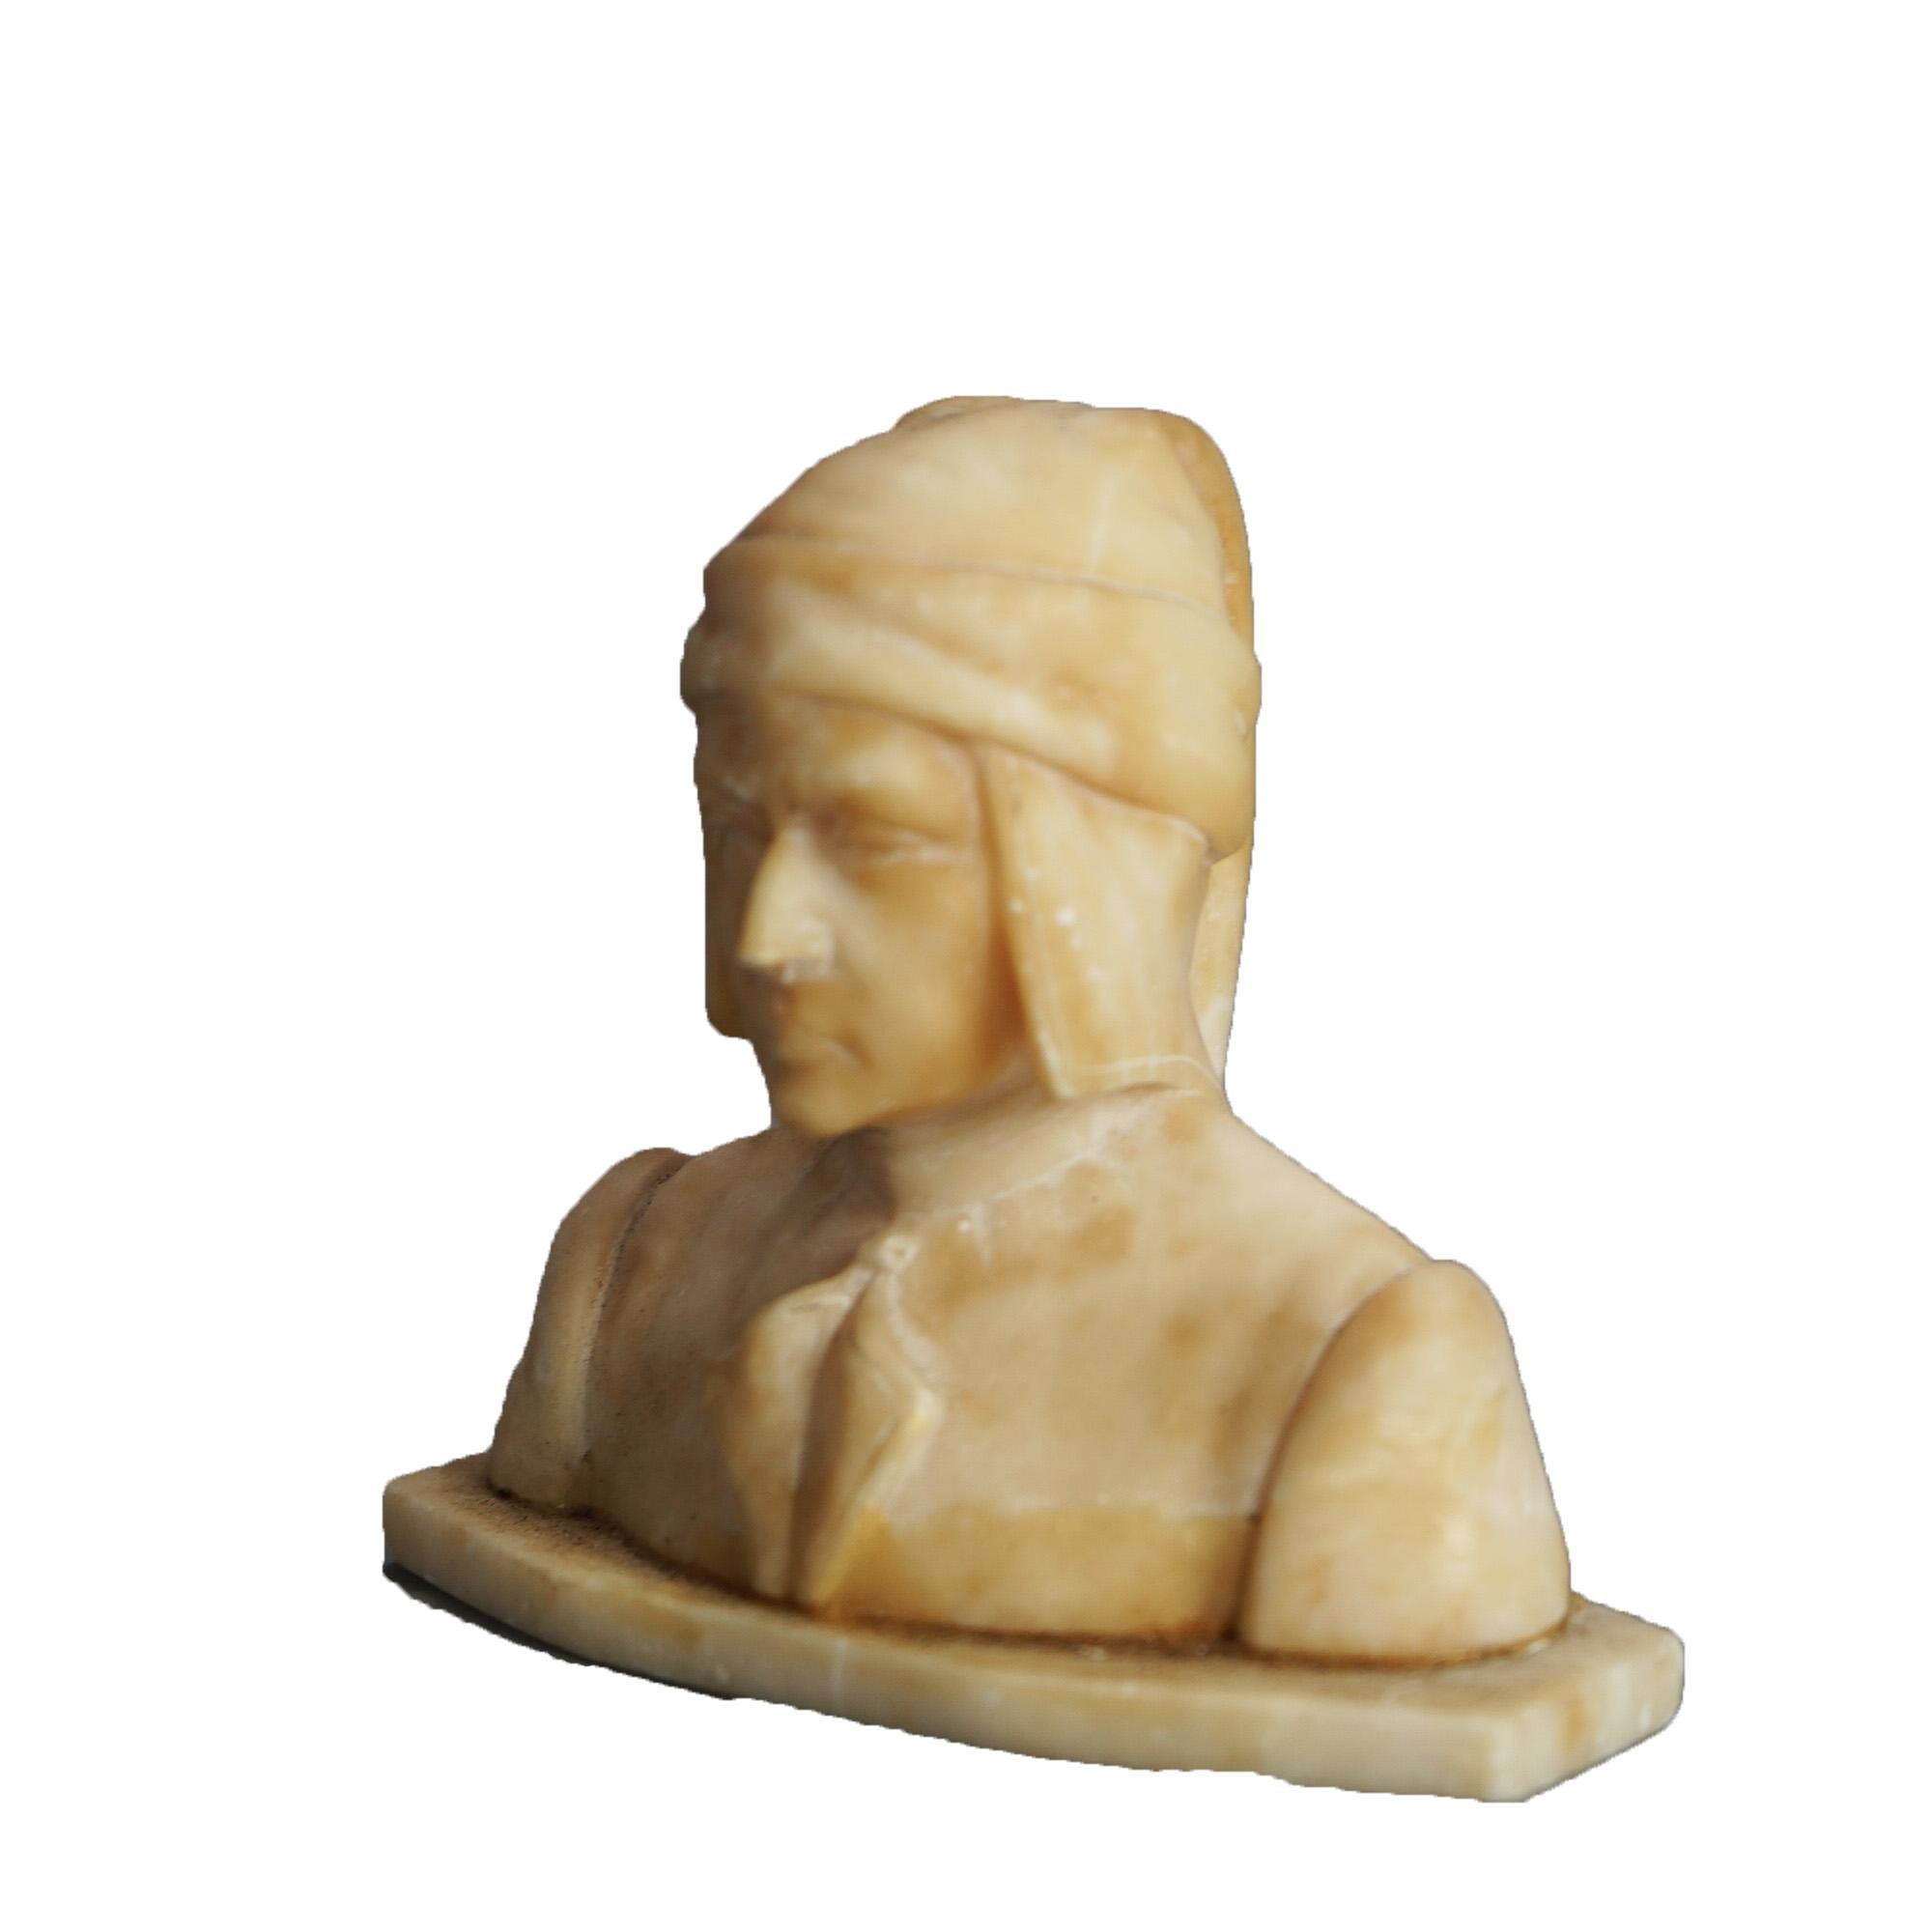 Buste italien néoclassique ancien en albâtre sculpté, vers 1900

Dimensions - 3,75 